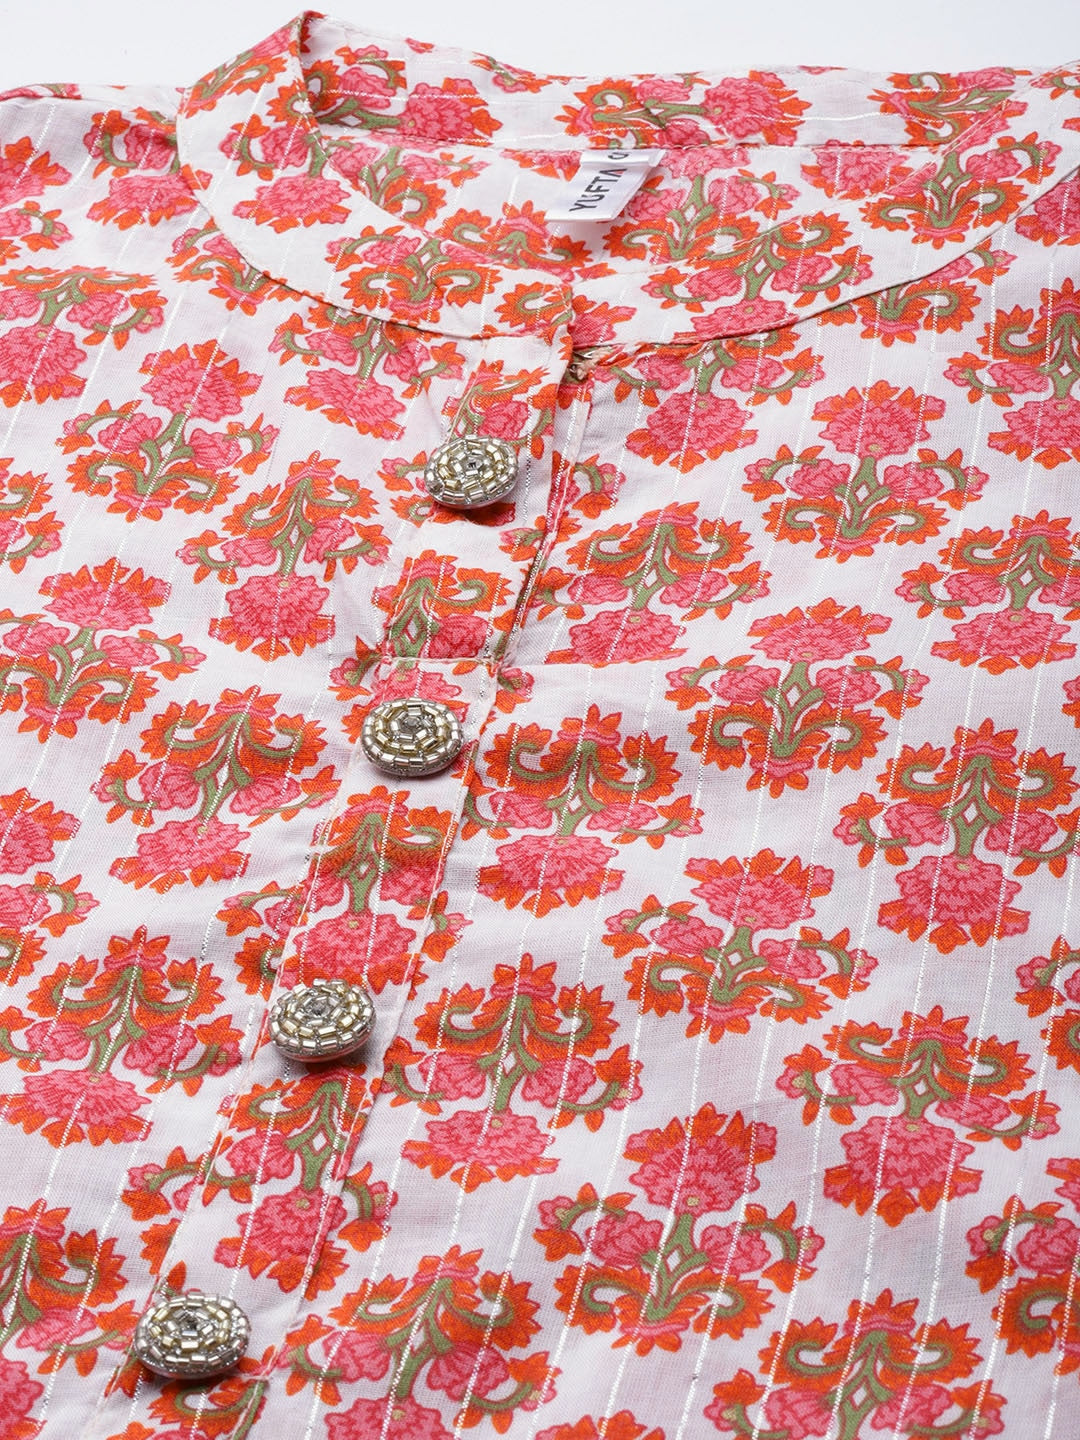 Off-White & Pink Ethnic Printed kurtis for women-Yufta Store-9563KURRDS